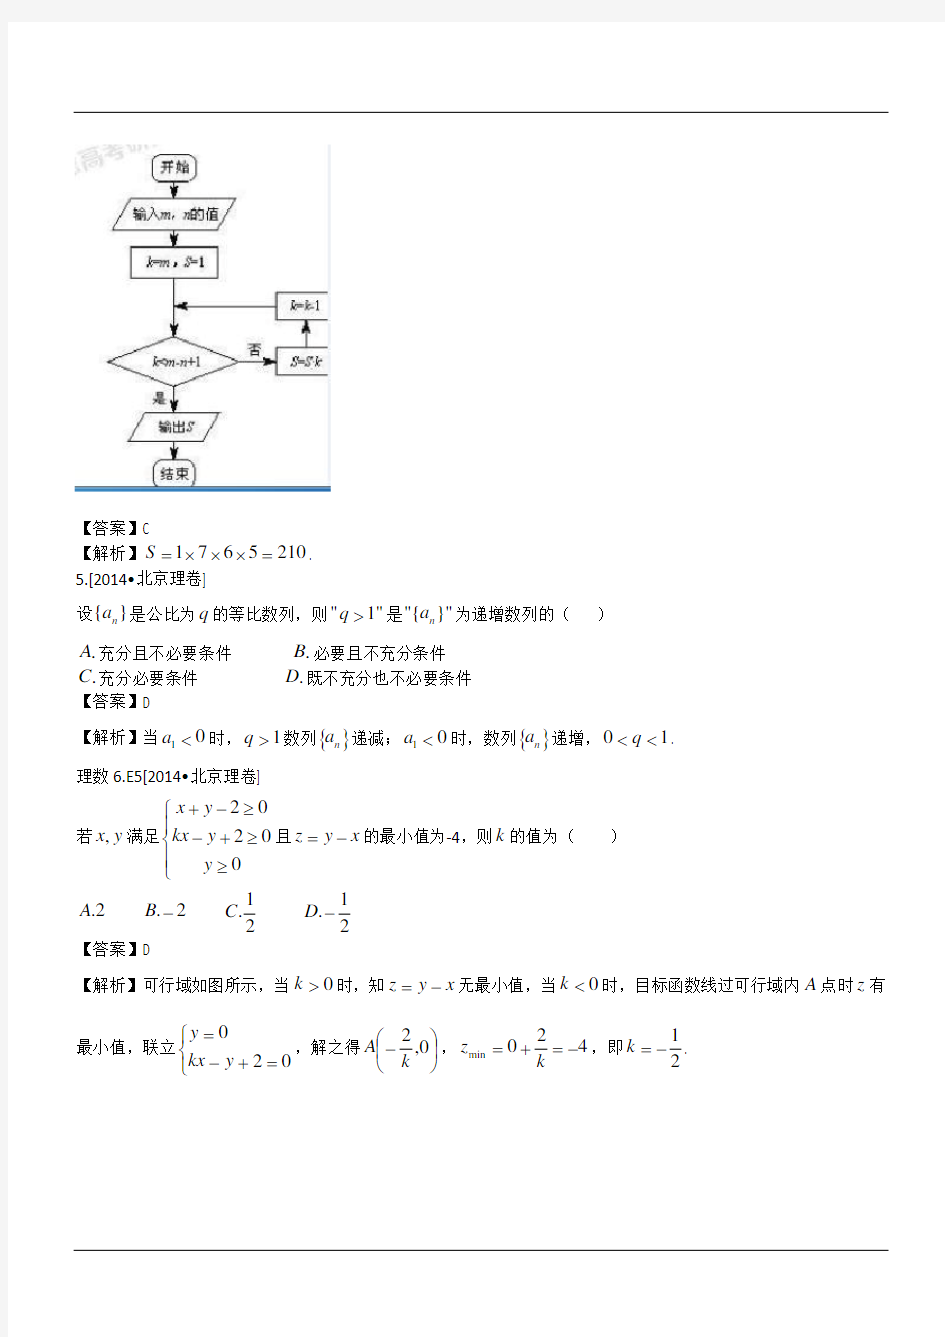 2014年高考北京卷数学理试题及答案解析